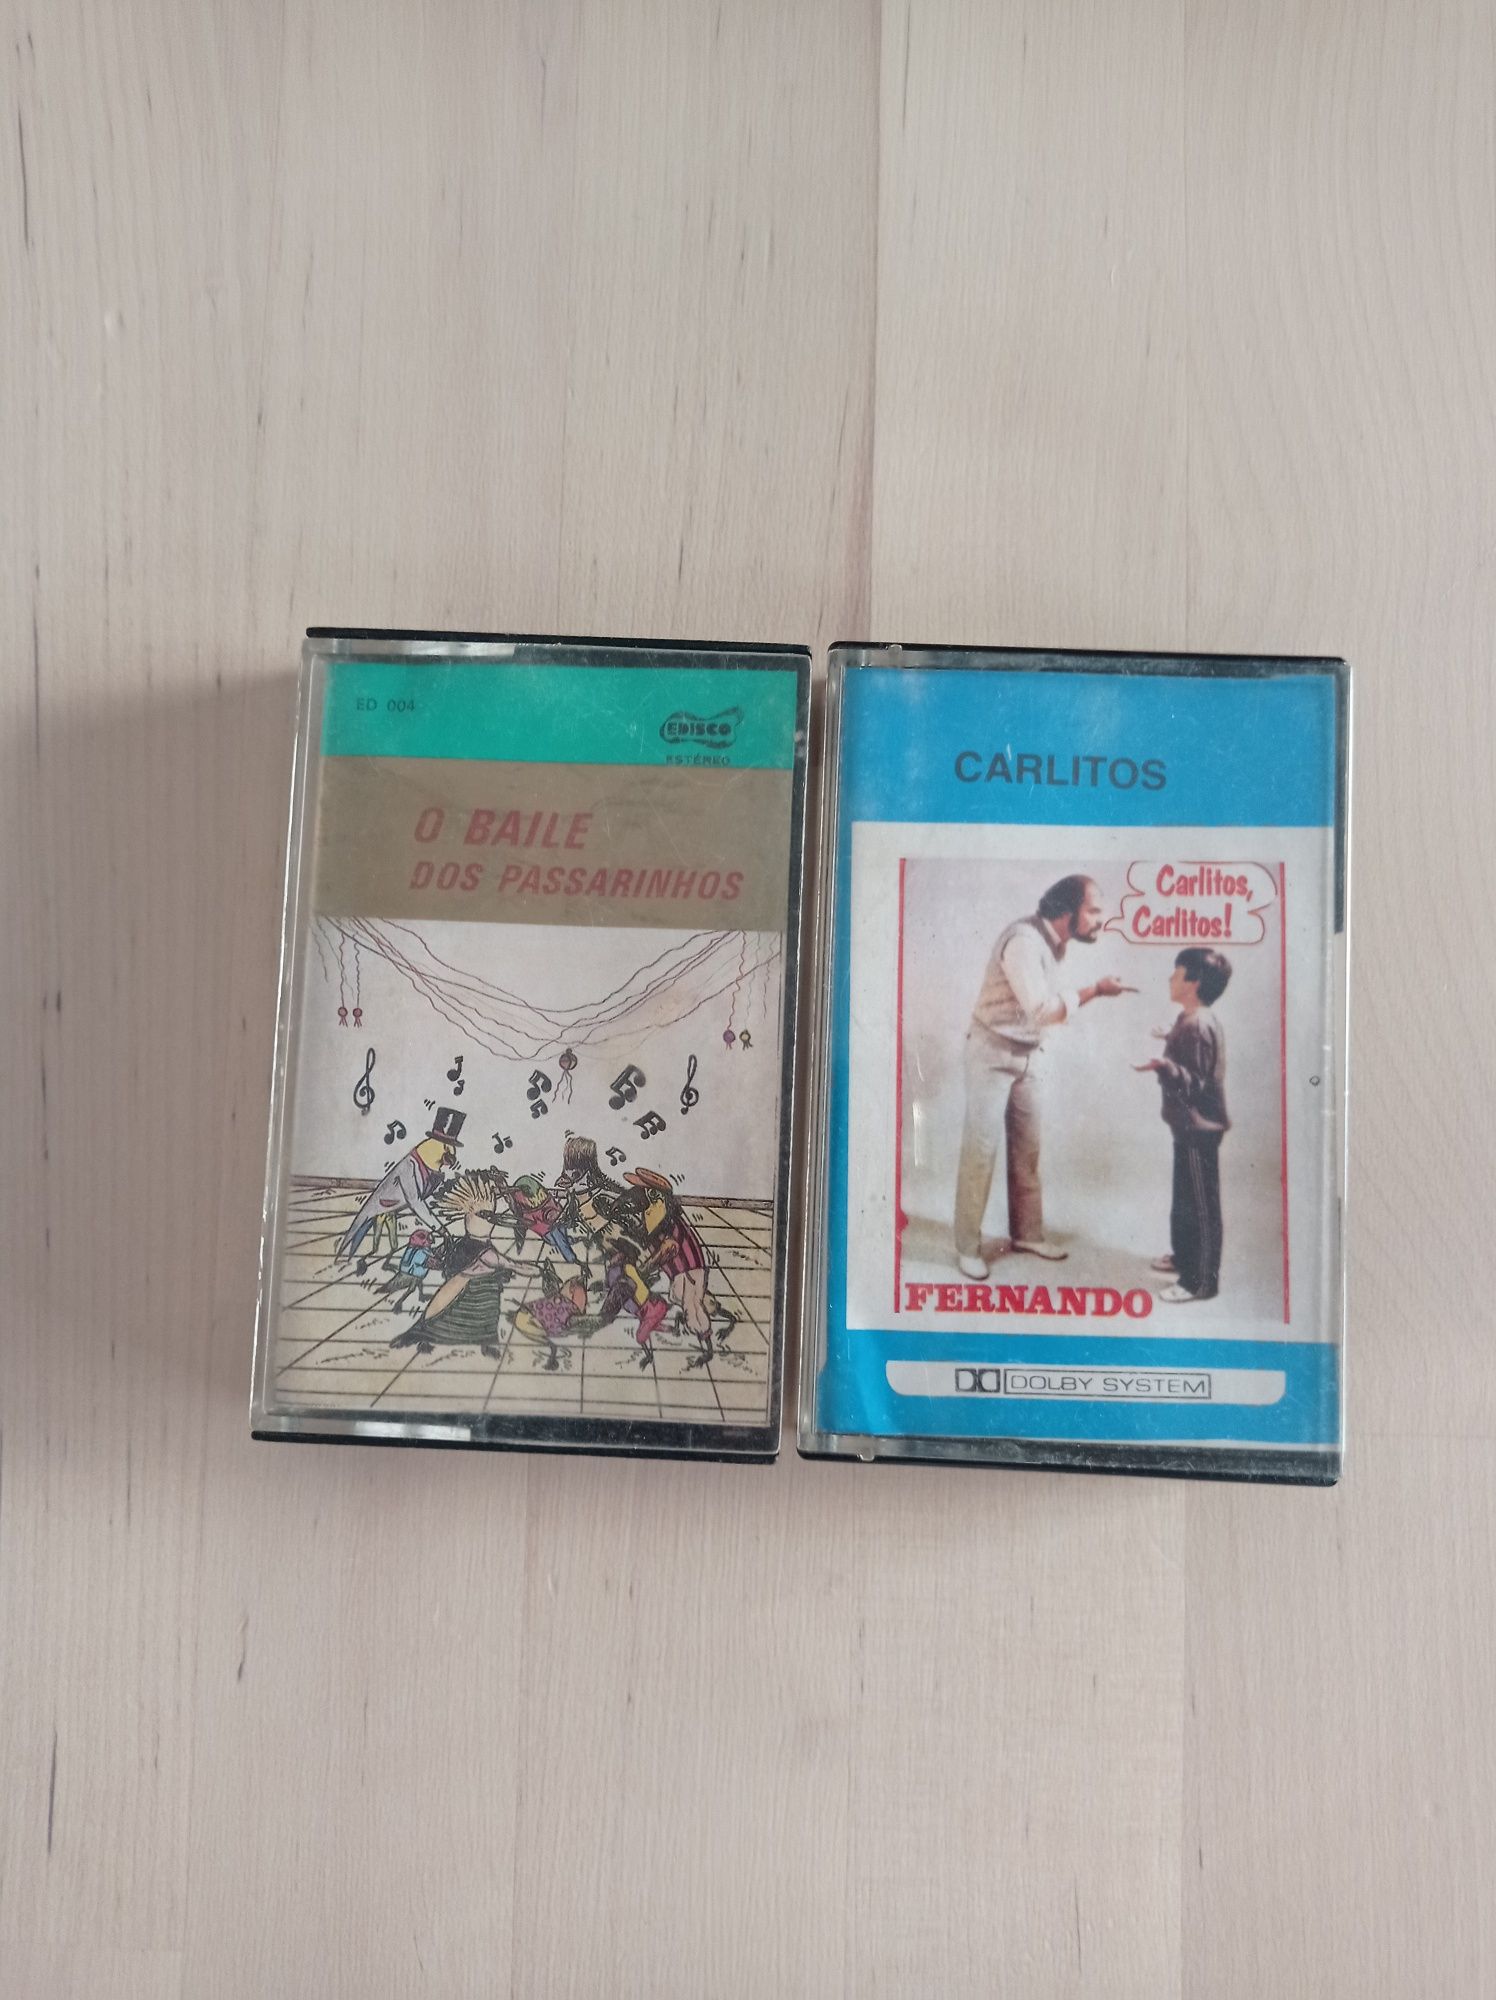 Cassetes de música portuguesa